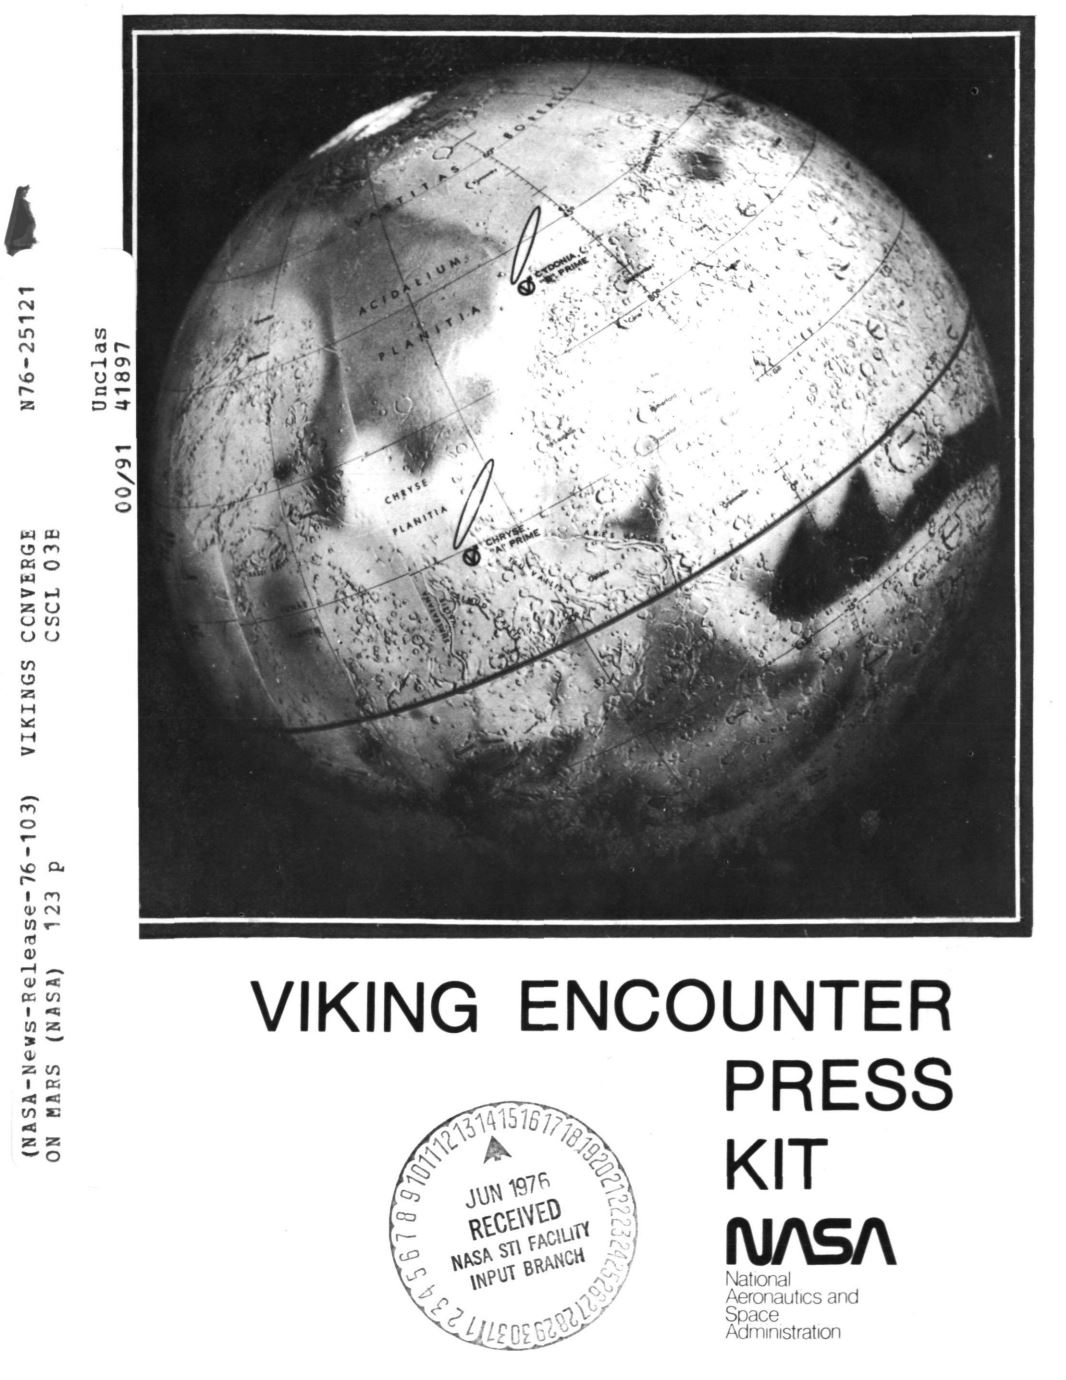 Viking Landing Site Press map 1976